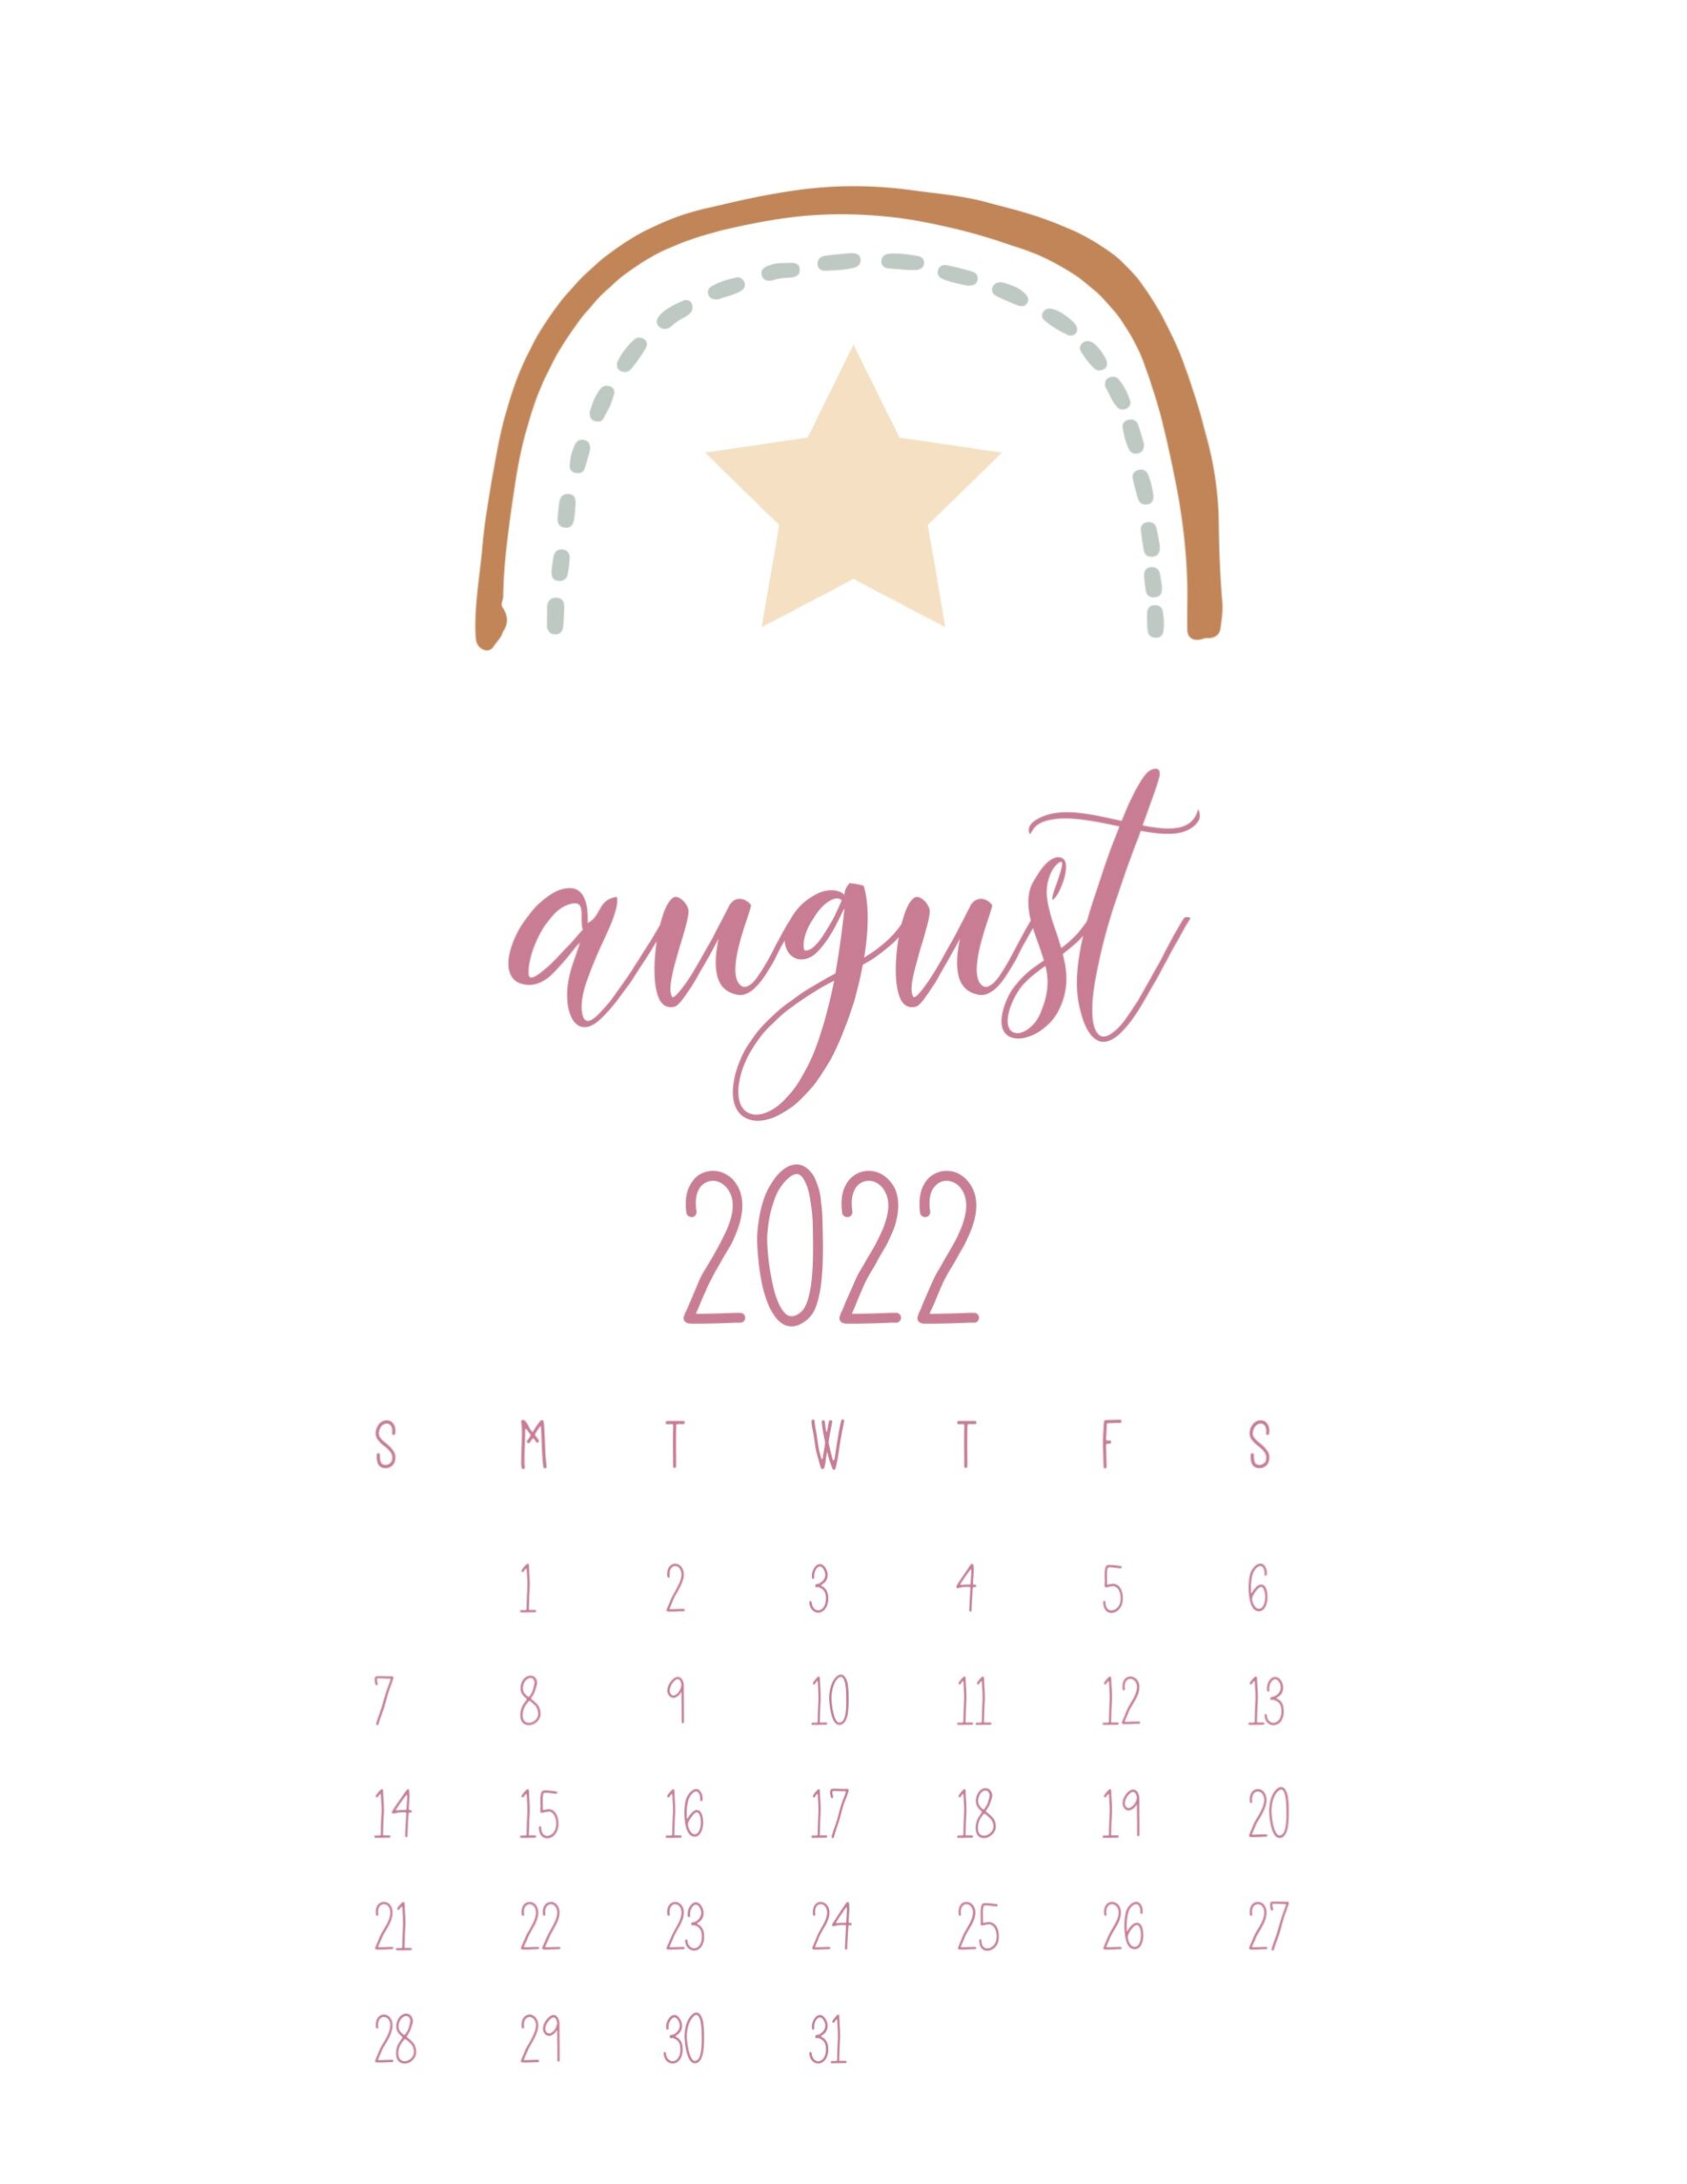 November 2022 Calendar Wallpaper August 2022 Calendar Wallpapers - Wallpaper Cave